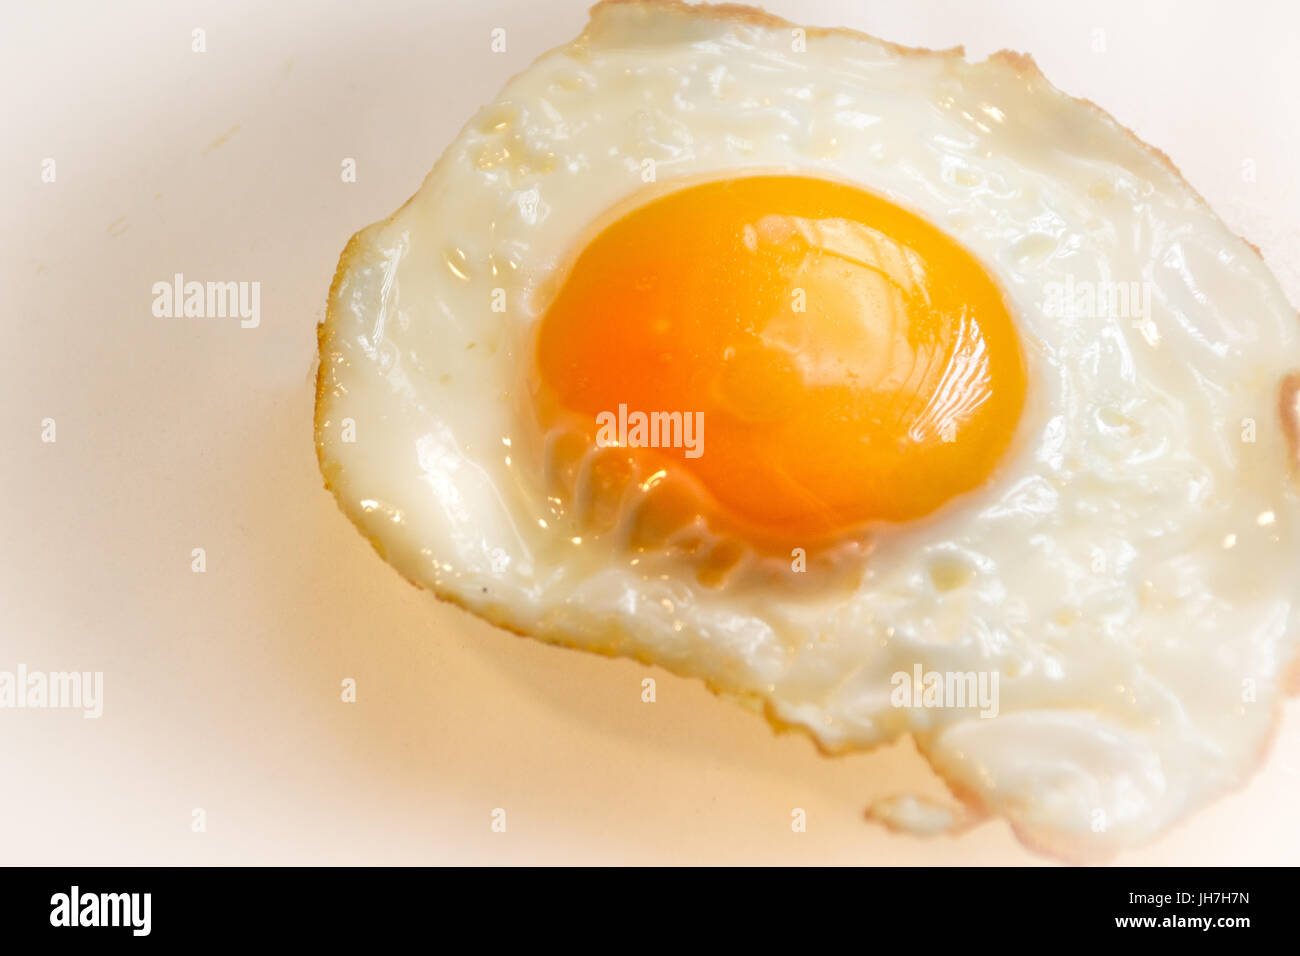 Fotografia di un uovo fritto dettaglio Foto Stock